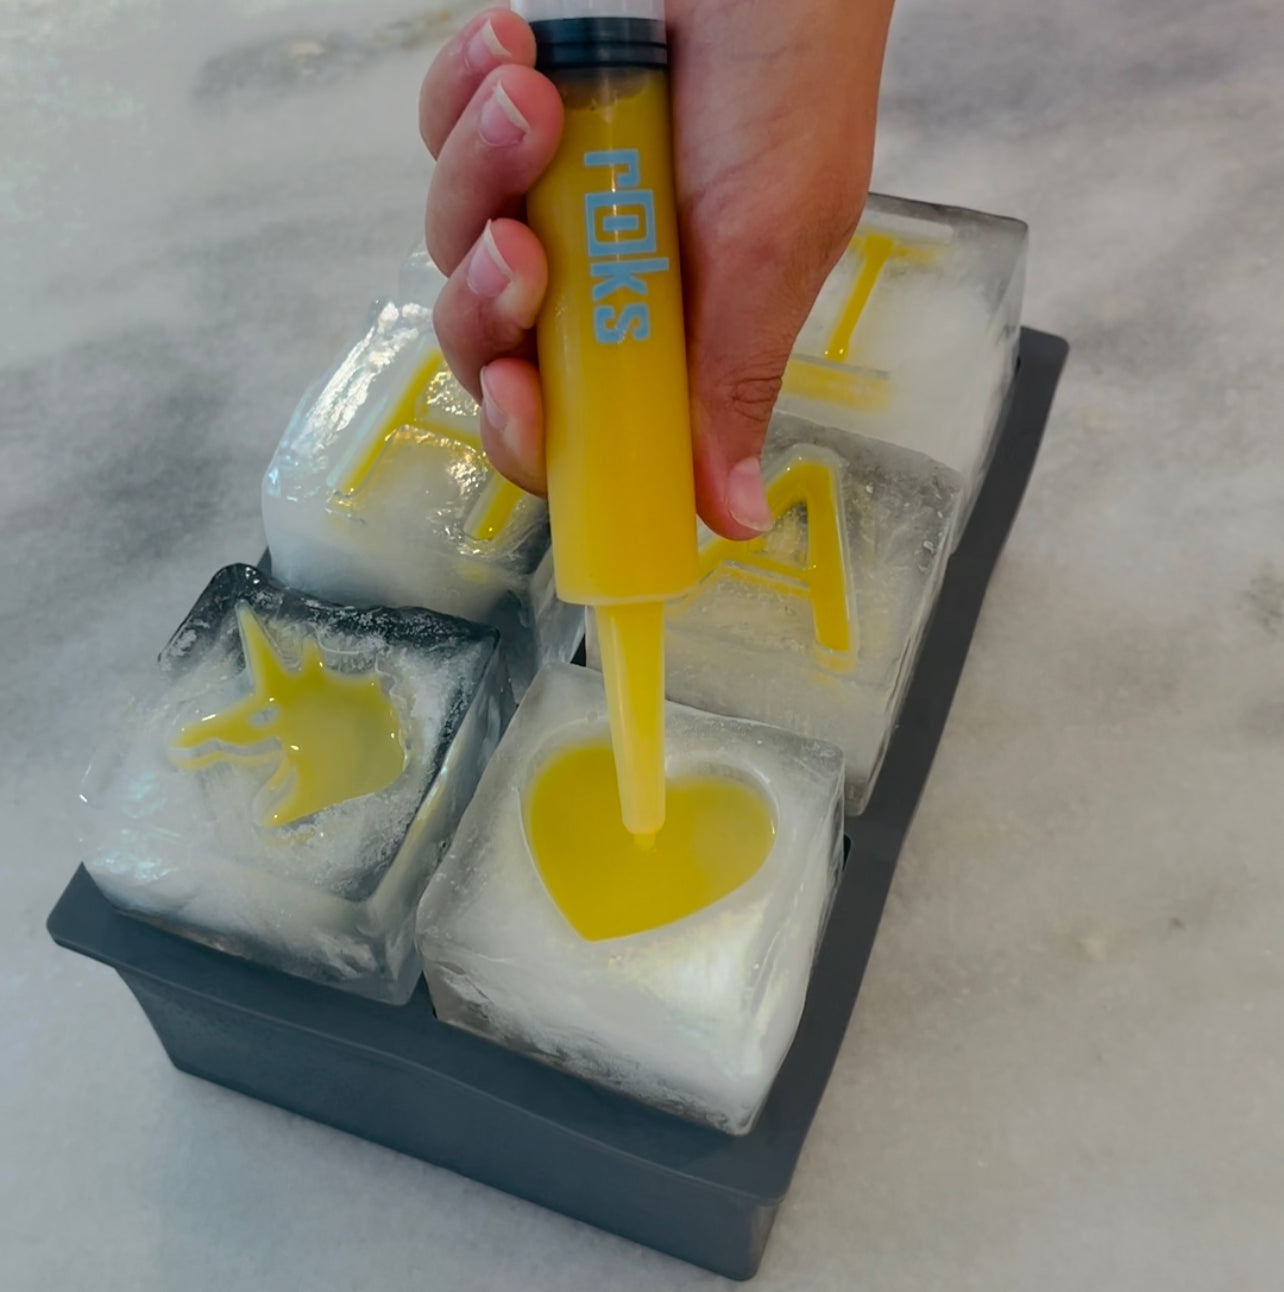 rOks Silicone Ice Tray